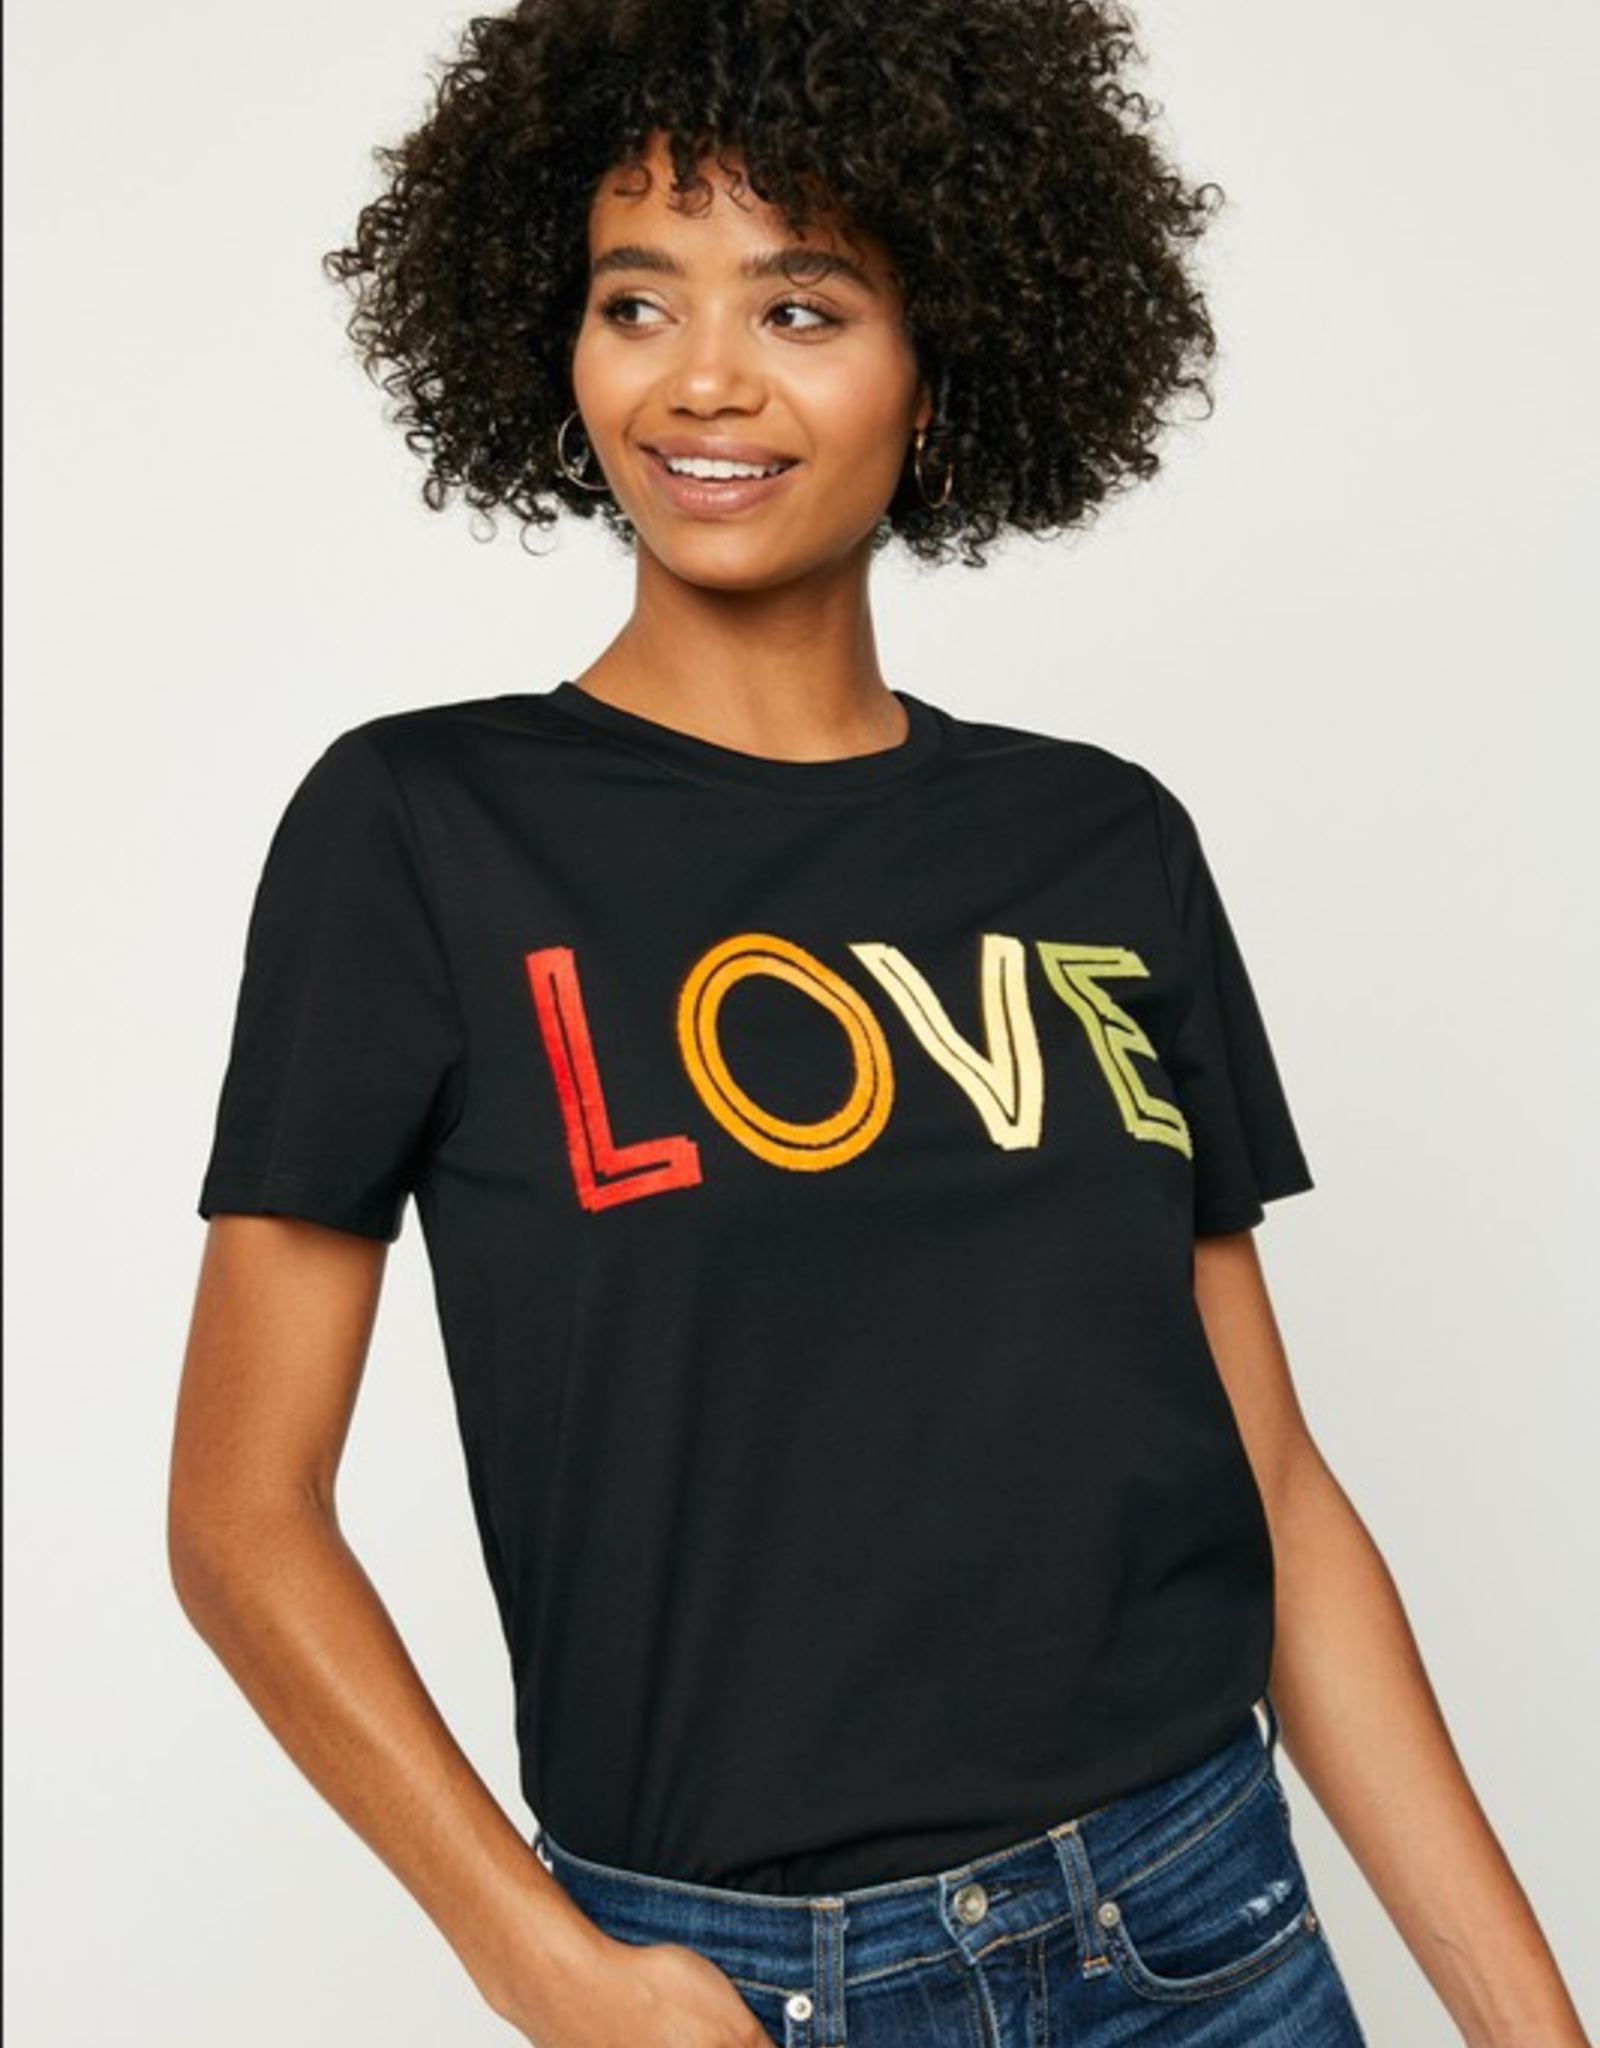 Hayden Los Angeles Love Flocked T Shirt